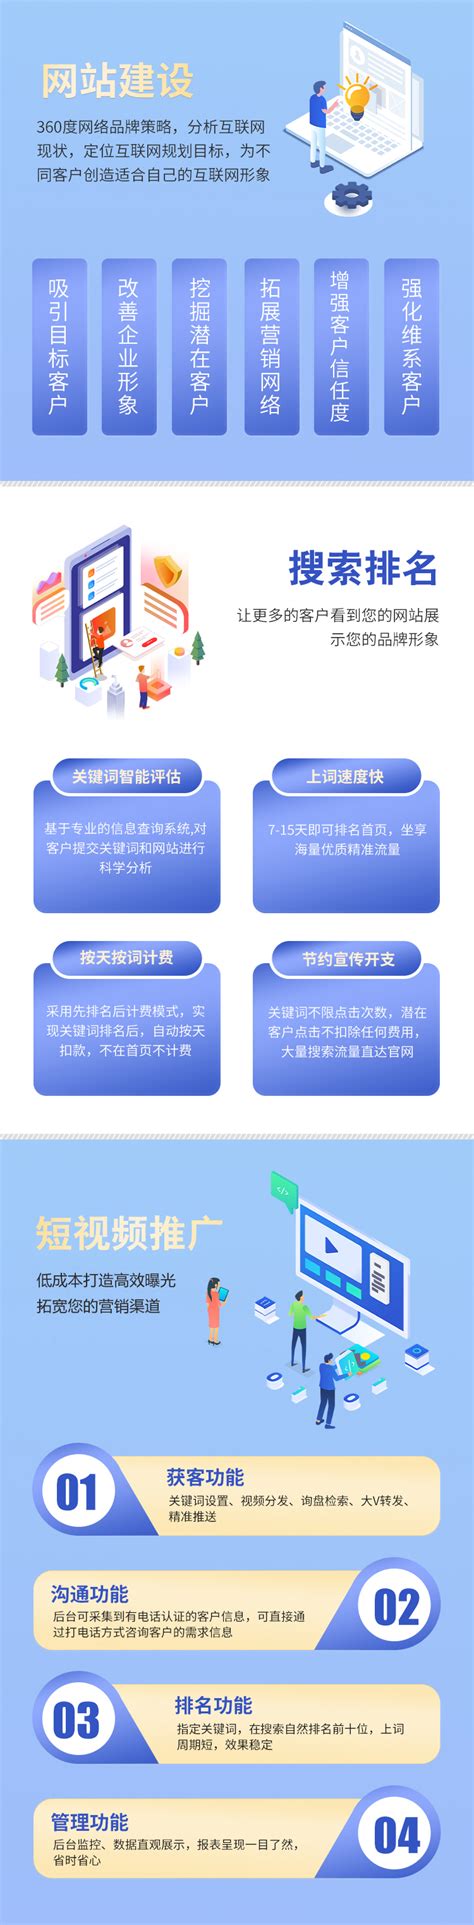 贵州网站建设步骤